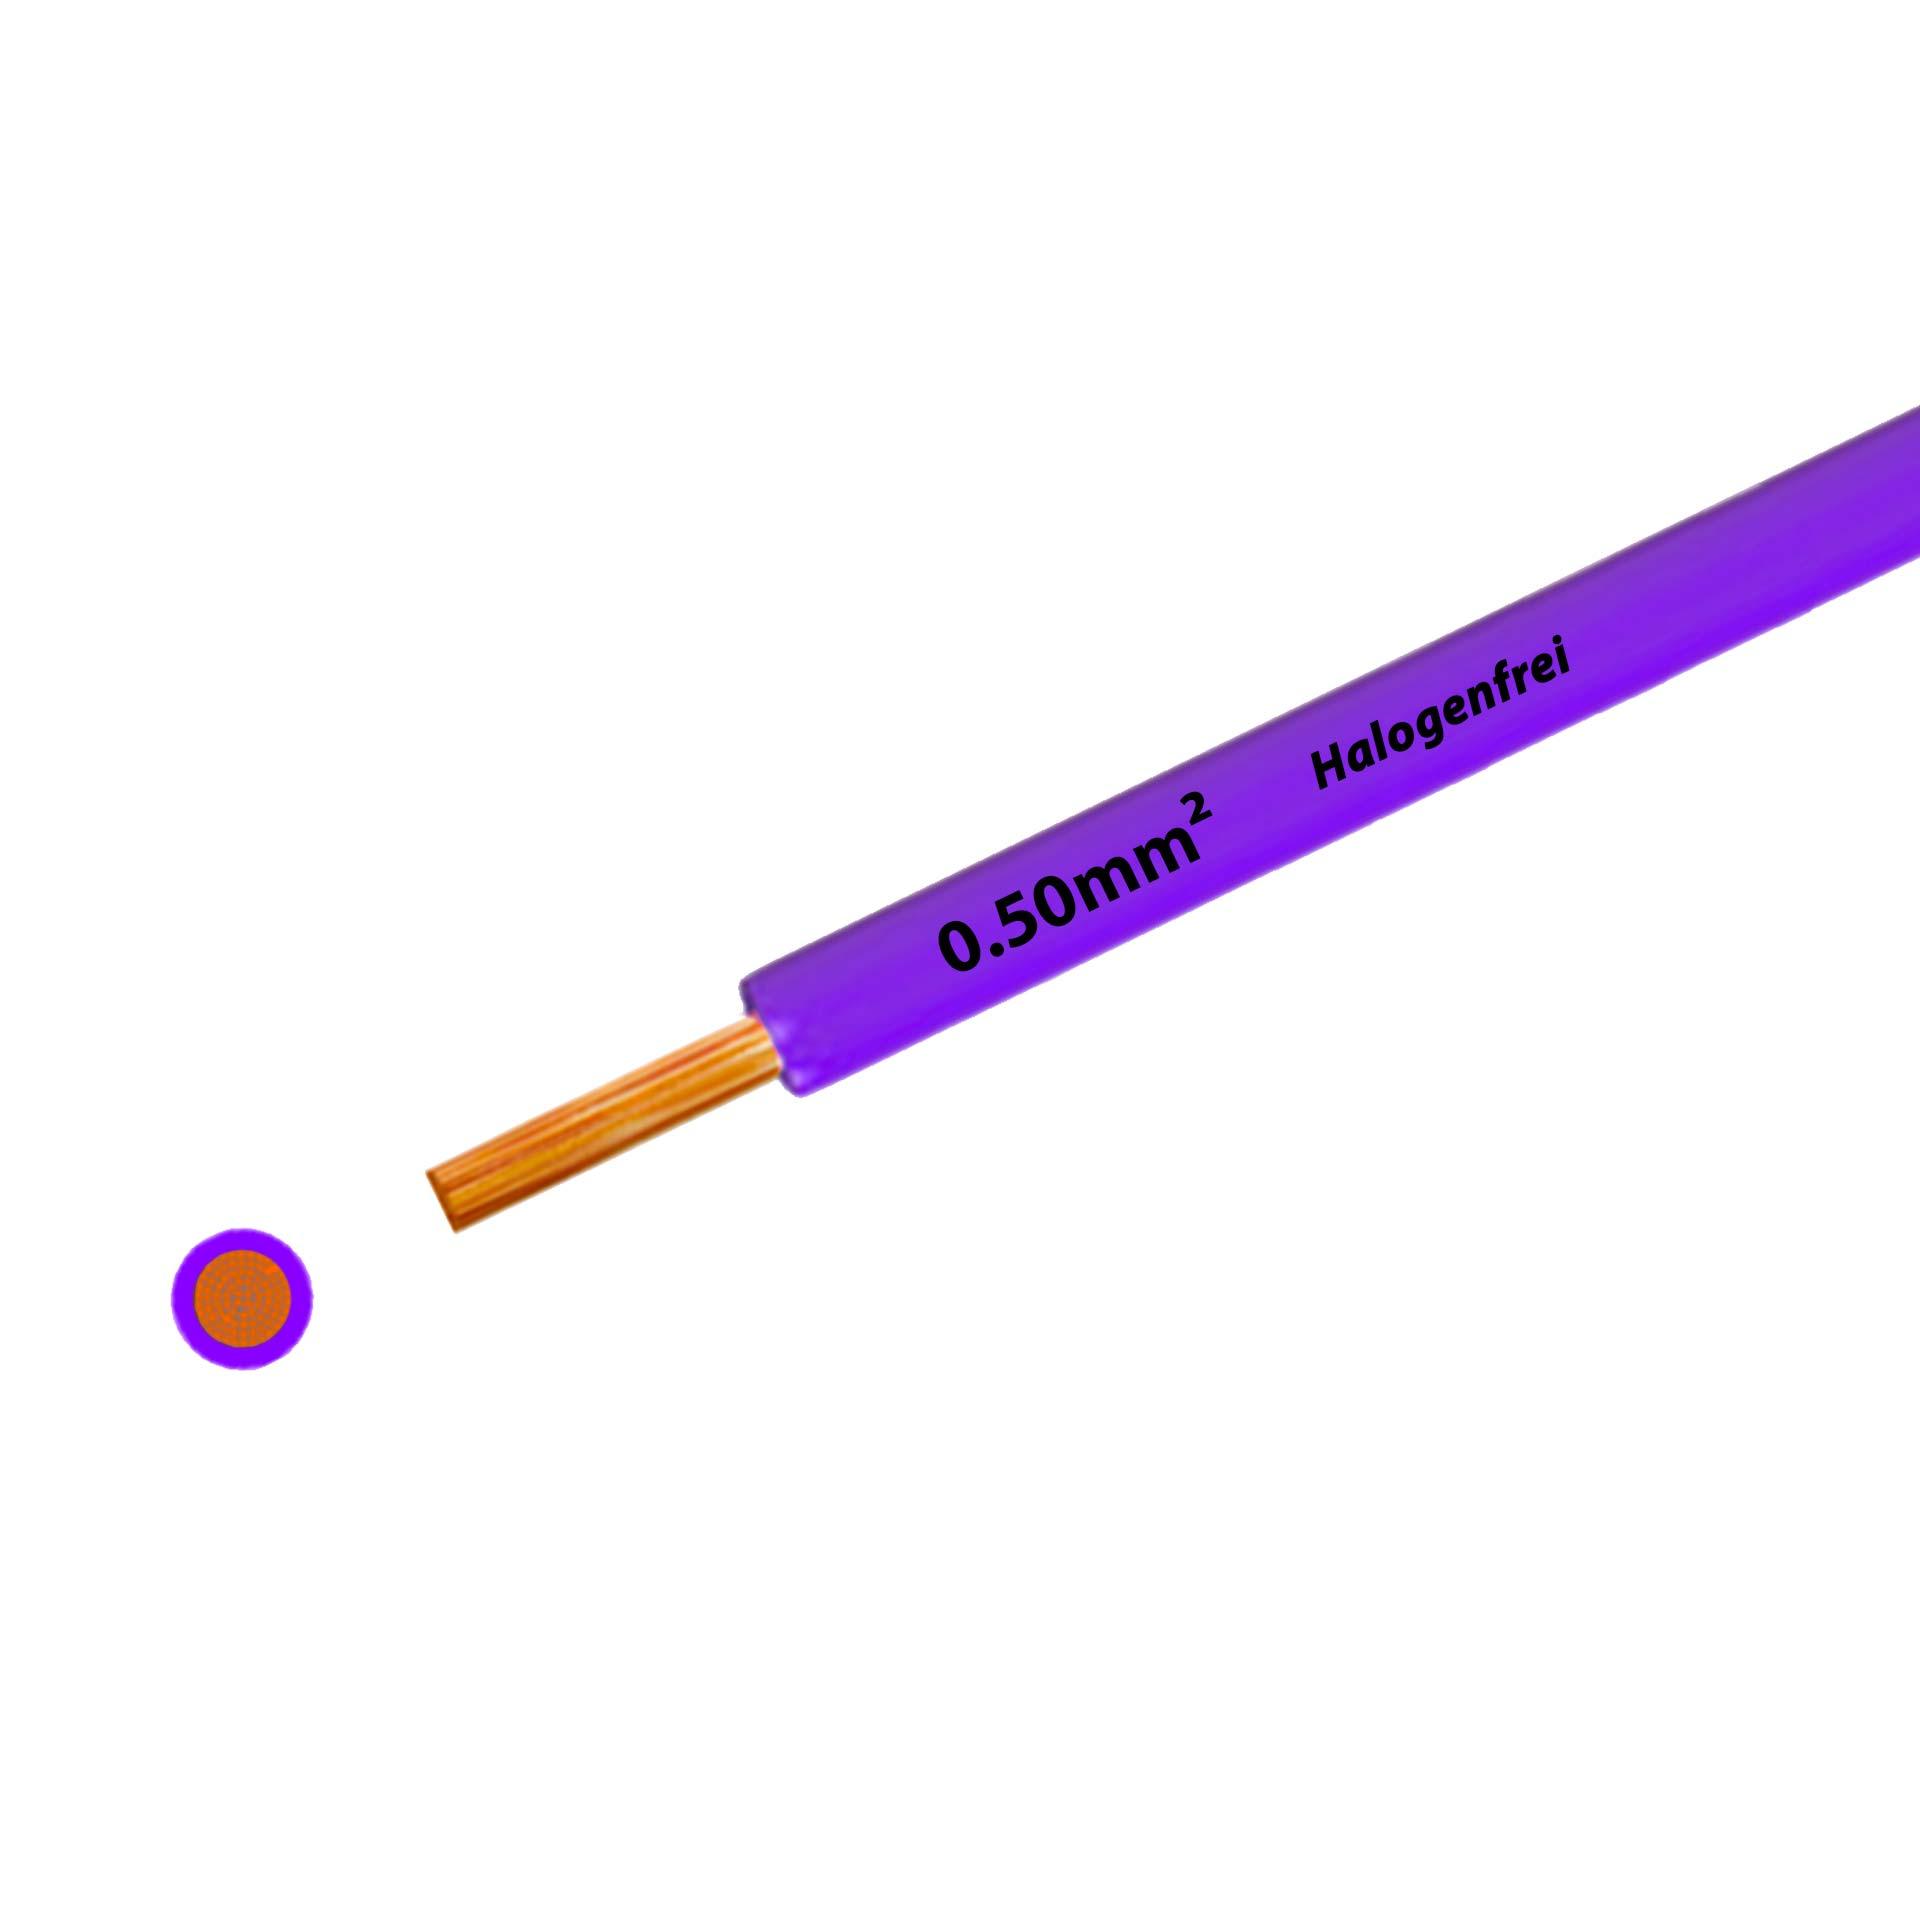 Litze halogenfrei 90° C , 500V, 0.50mm2, violett (RAL 4005), auf Kunststoffrolle